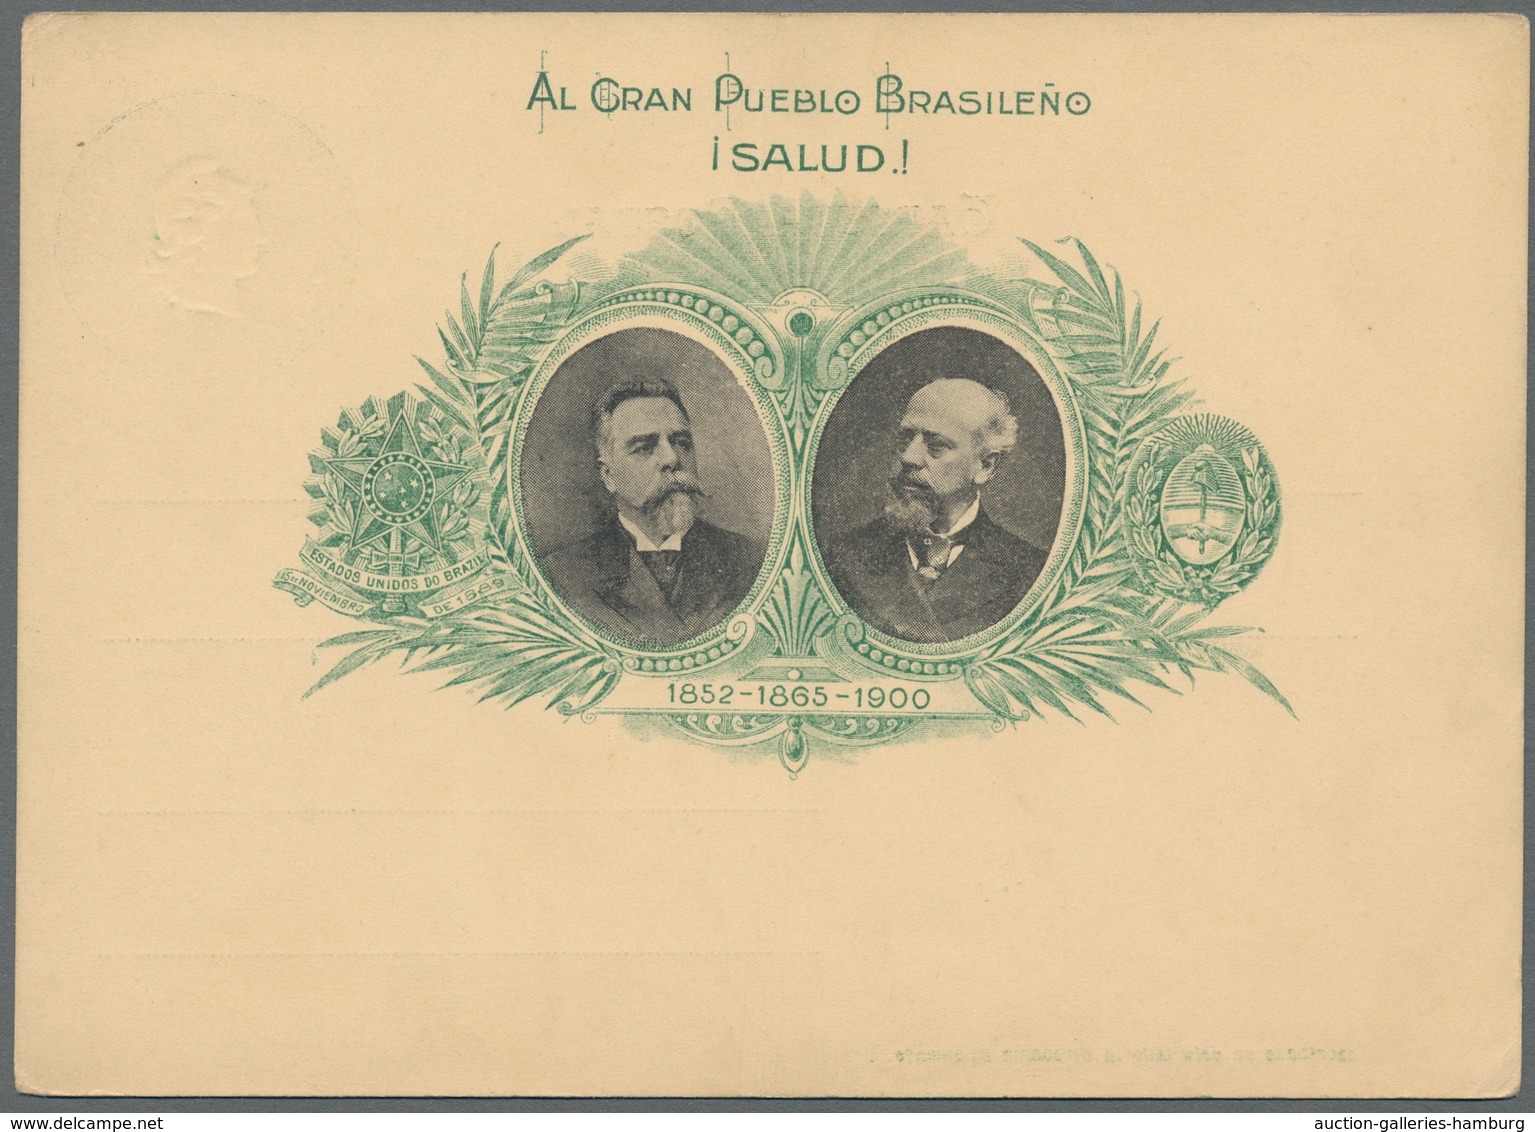 Argentinien - Ganzsachen: 1876-1952, Sammlung in zwei Briefordnern mit 350 ungebrauchten, fast nur v